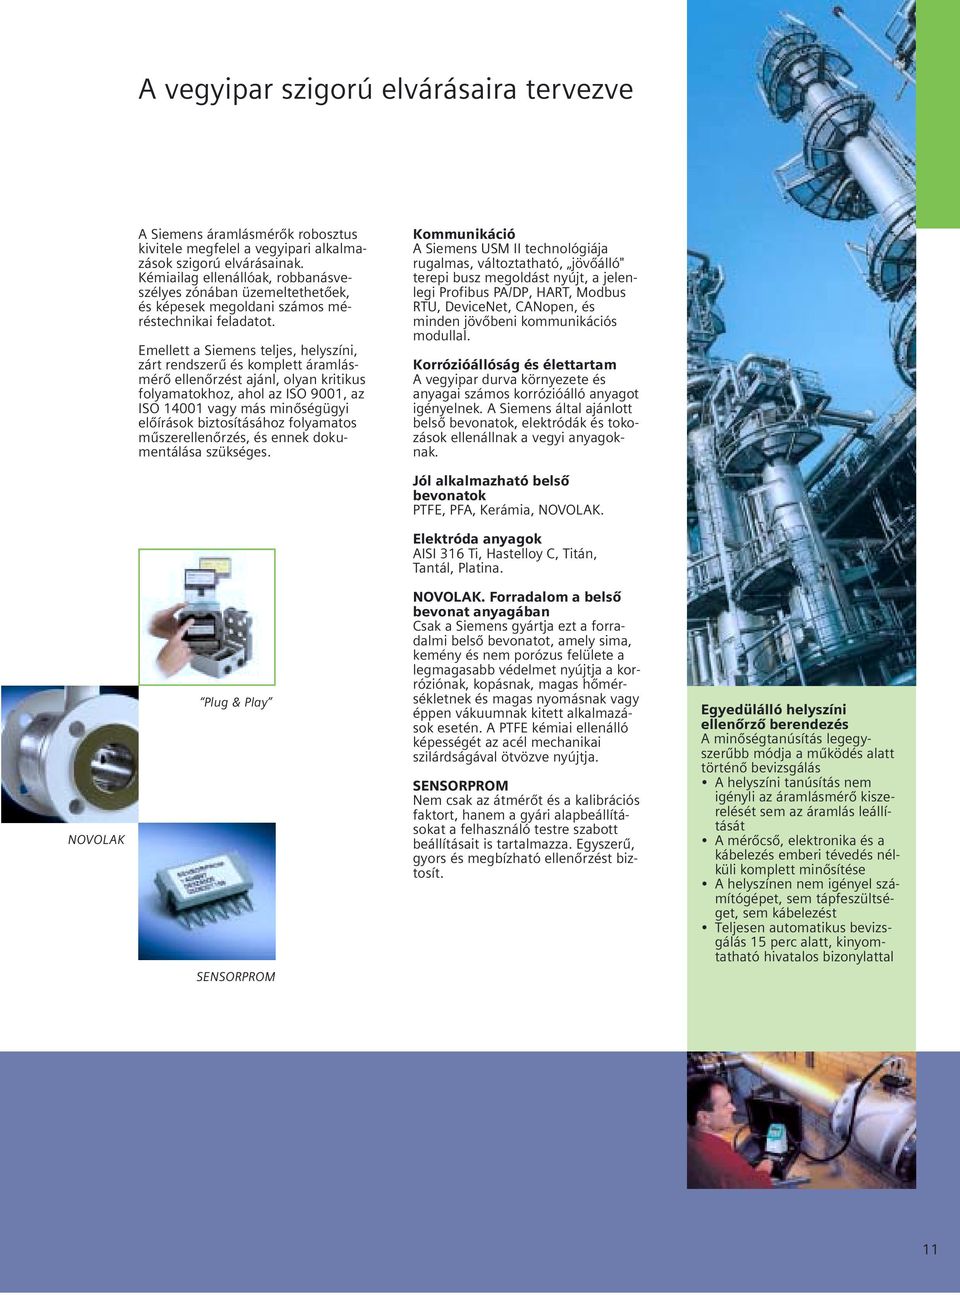 Emellett a Siemens teljes, helyszíni, zárt rendszerű és komplett áramlásmérő ellenőrzést ajánl, olyan kritikus folyamatokhoz, ahol az ISO 9001, az ISO 14001 vagy más minőségügyi előírások